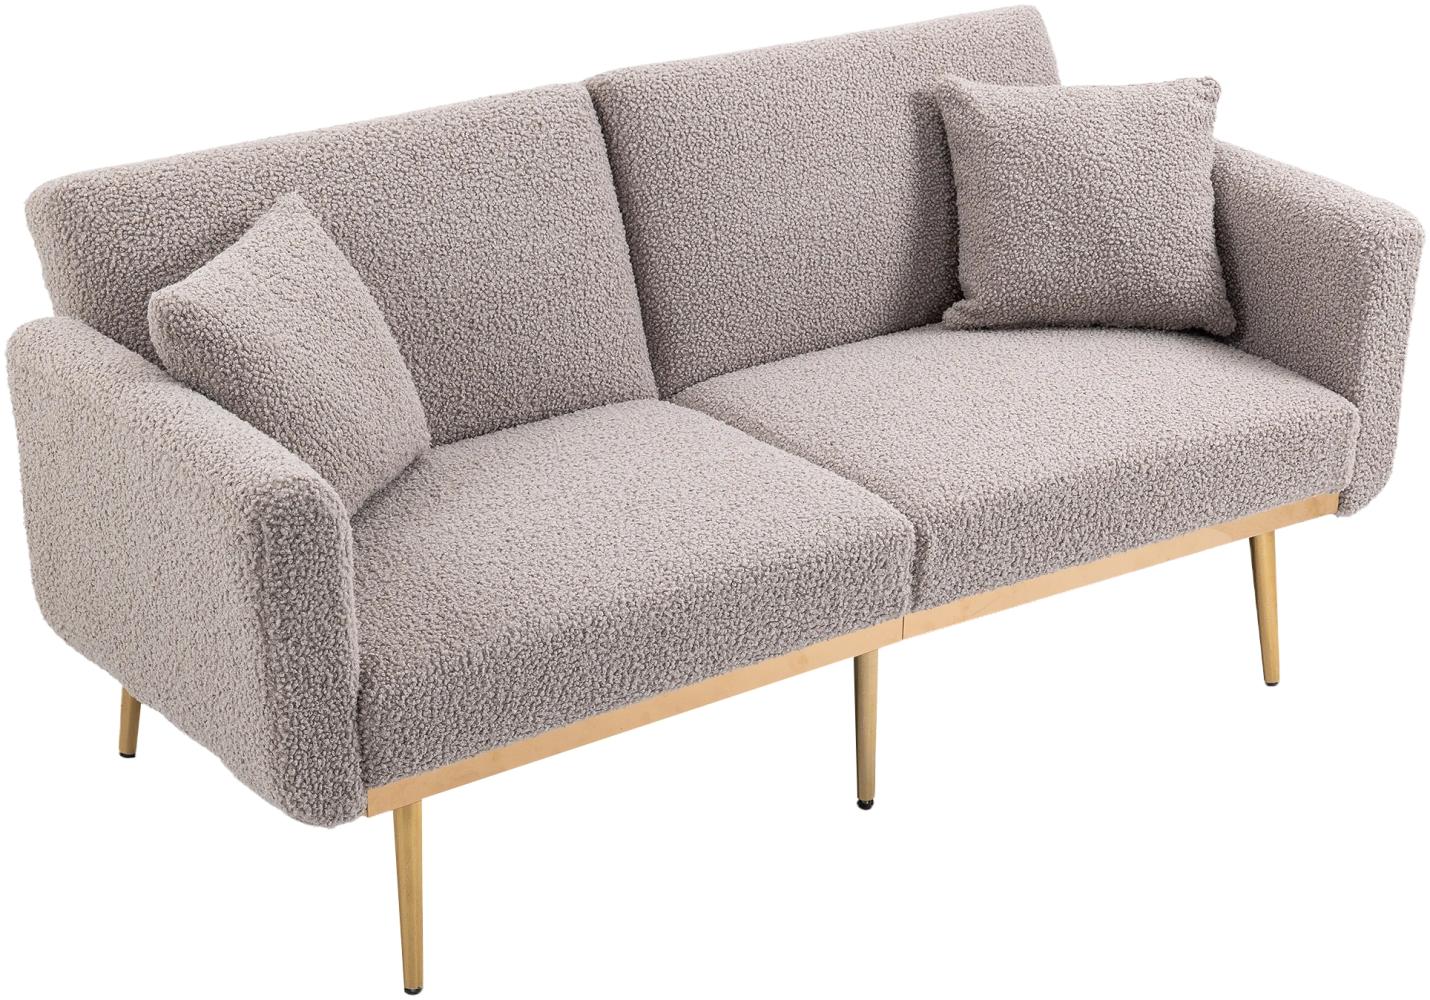 Merax Teddystoff, modernes gepolstertes 2-Sitzer-Sofa, weiches Akzentsofa. Loveseat-Sofa mit Metallfüßen, Grau Bild 1